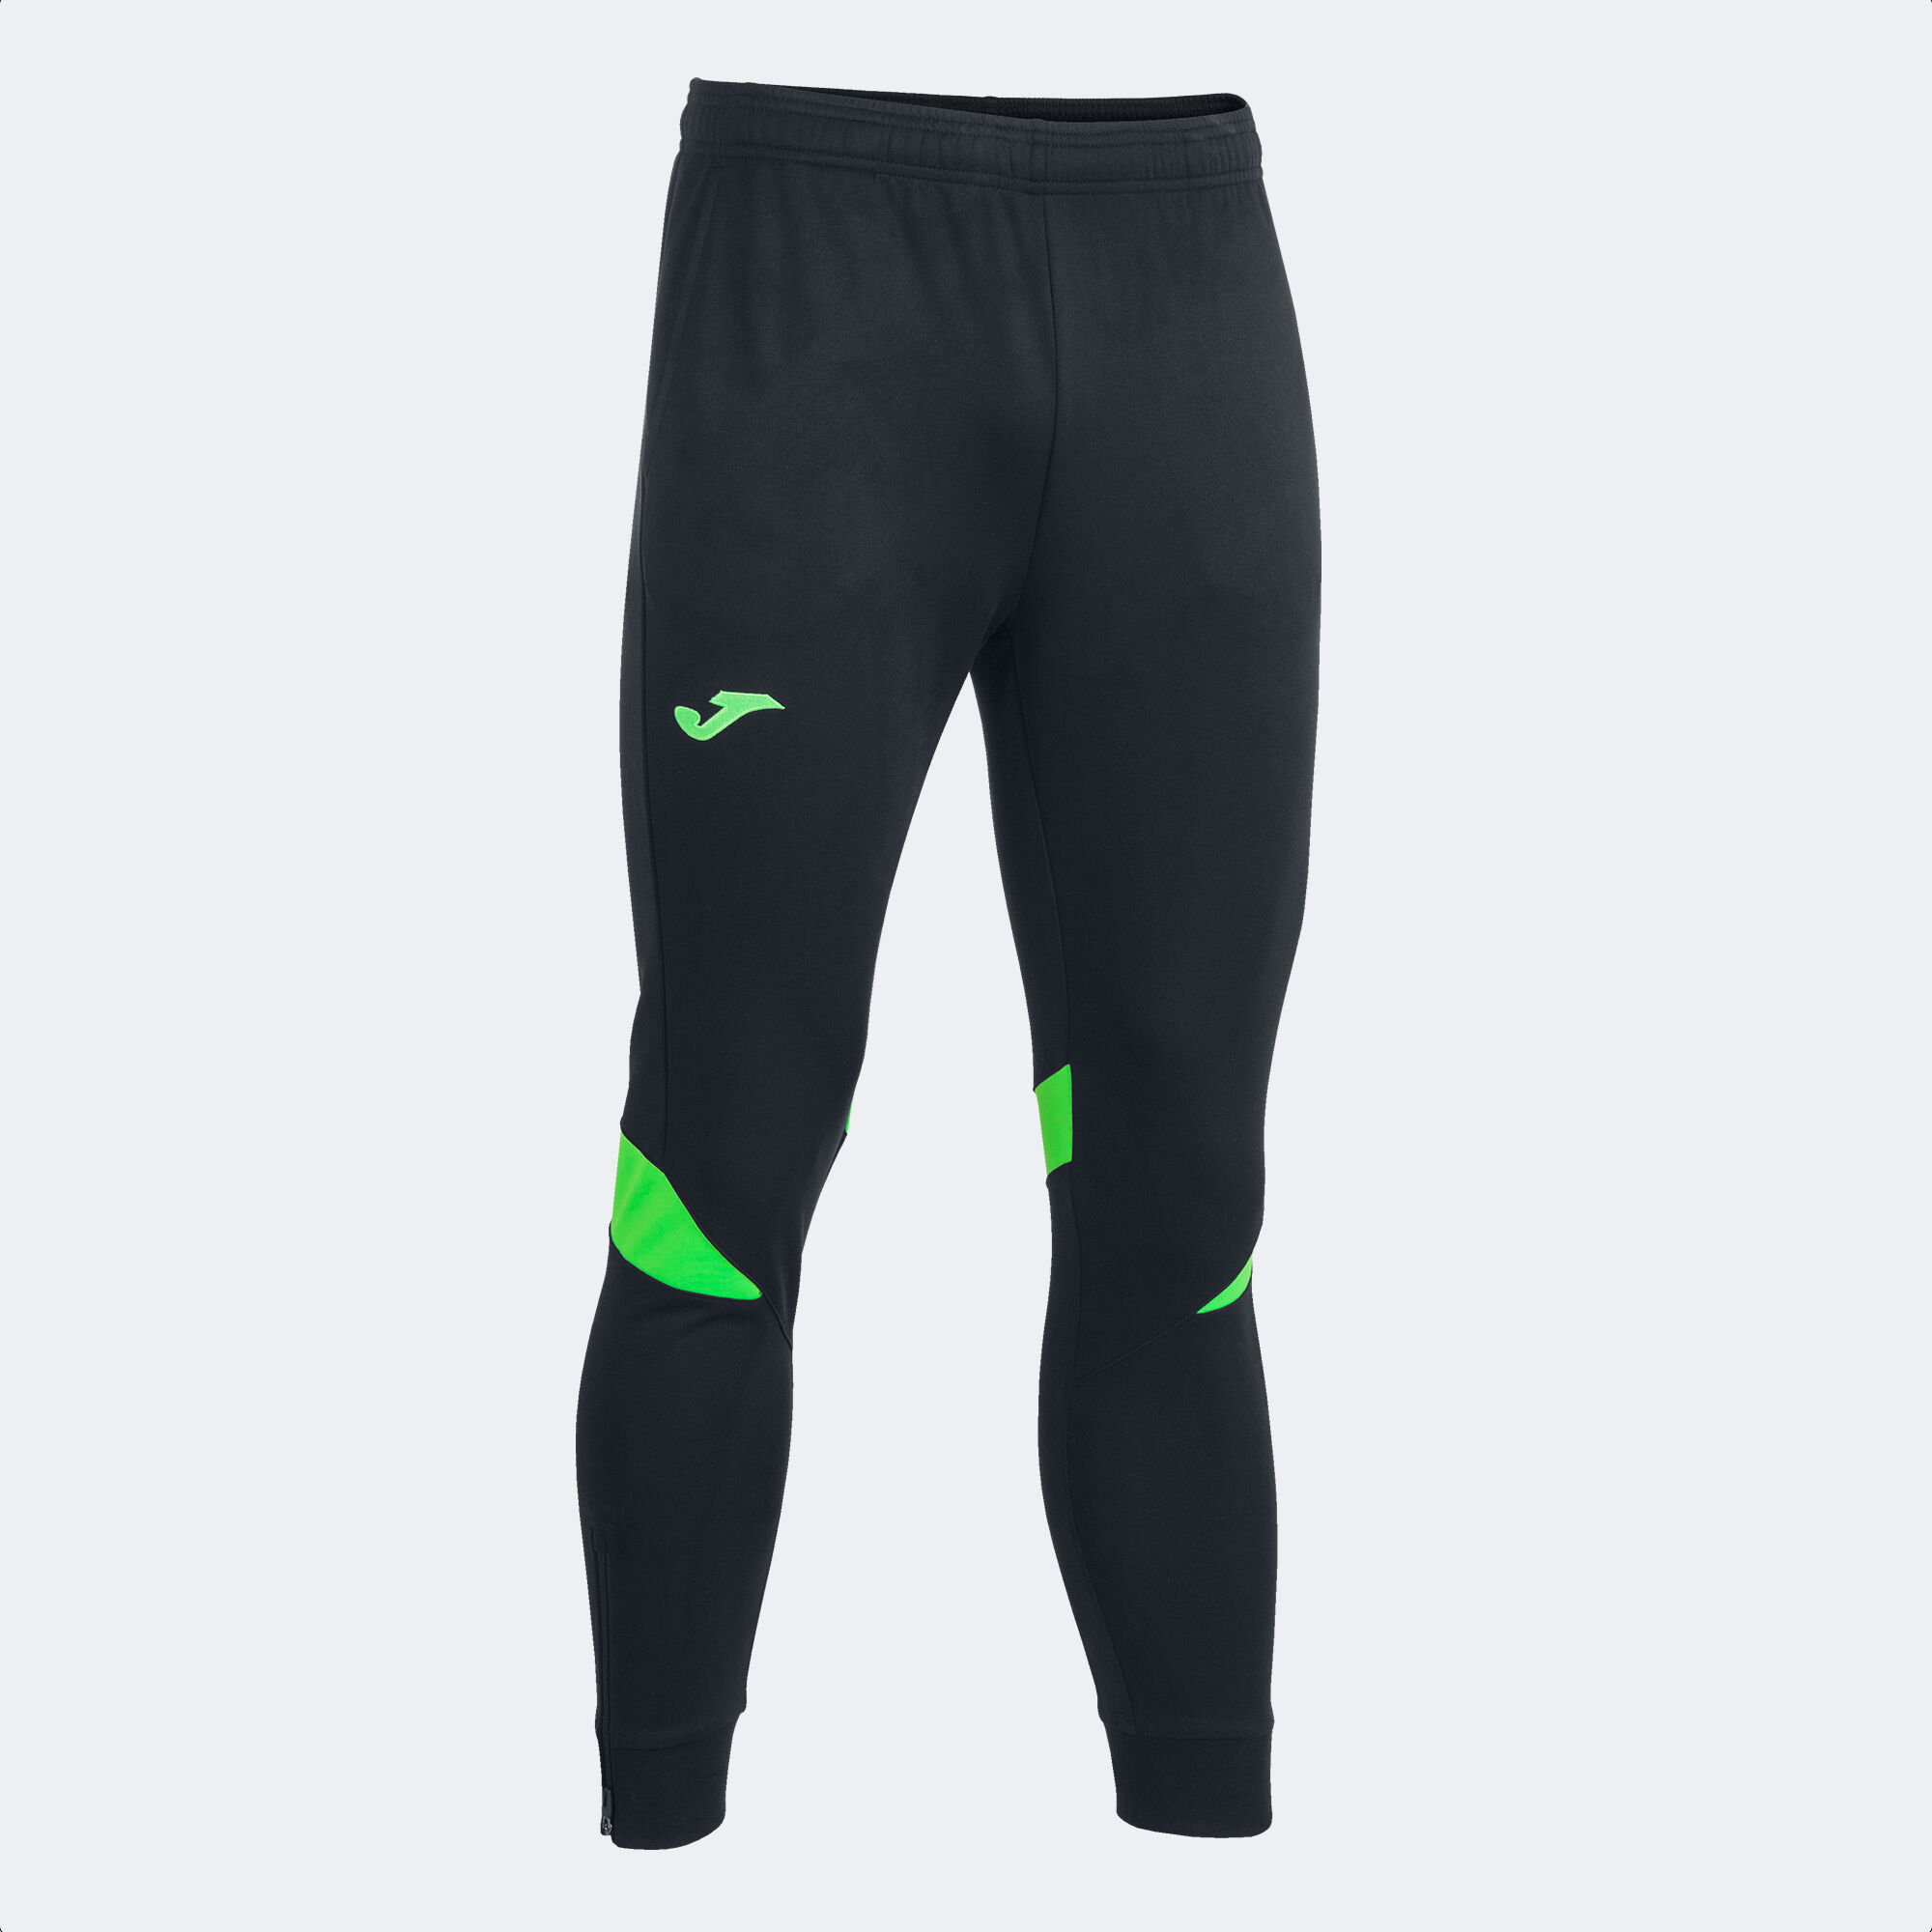 Pantalone lungo uomo Championship VI nero verde fluorescente